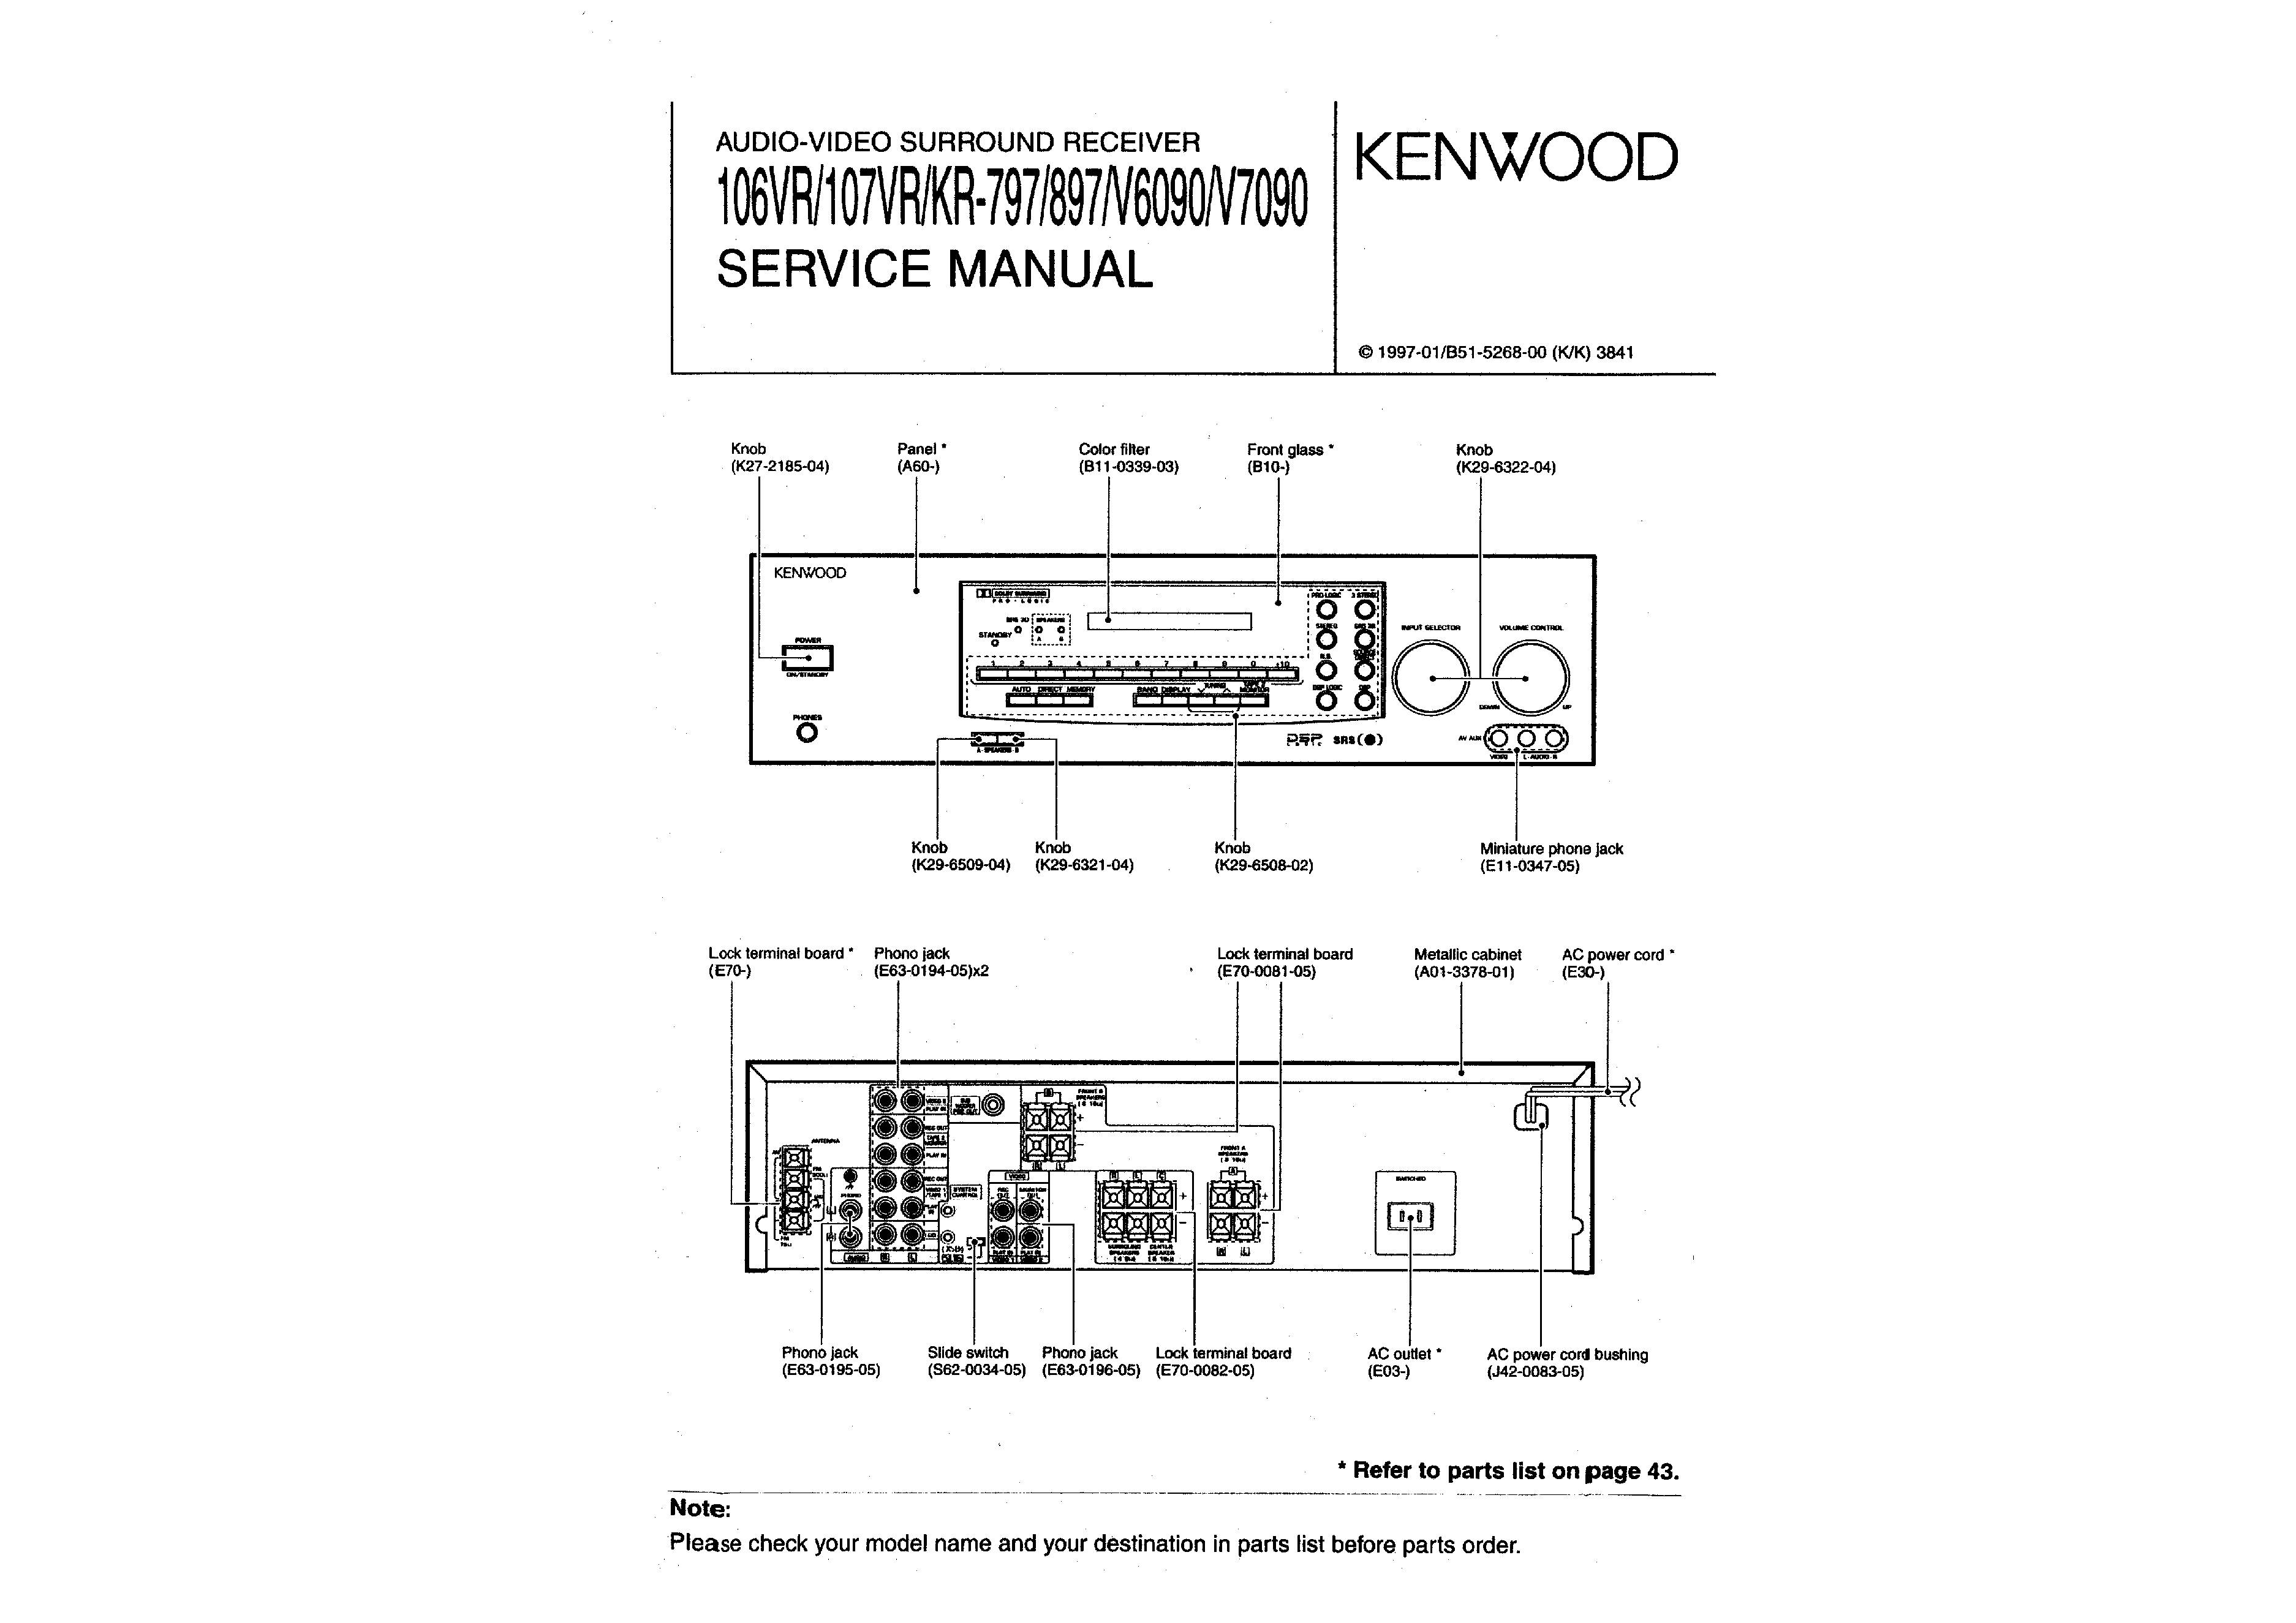 Kenwood KR-V7090